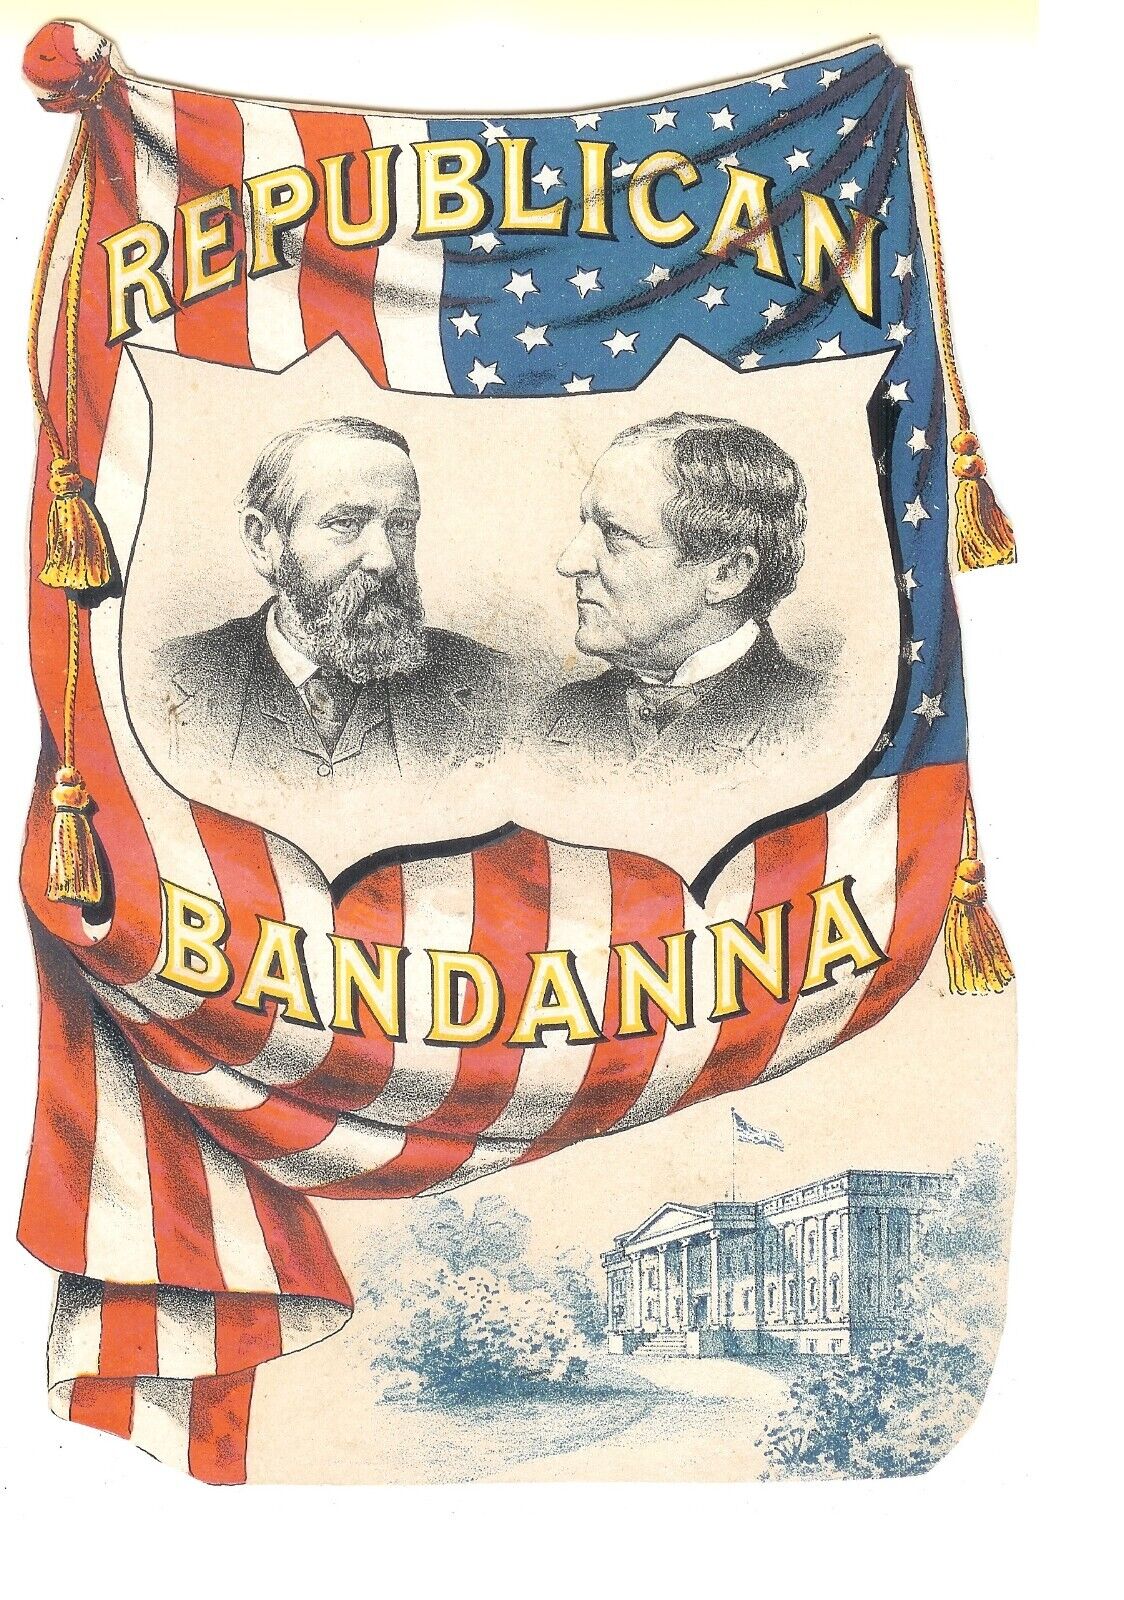 REPUBLICAN BANDANNA-Presidential Campaign 1888-Benjamin Harrison-Morton-TC-008